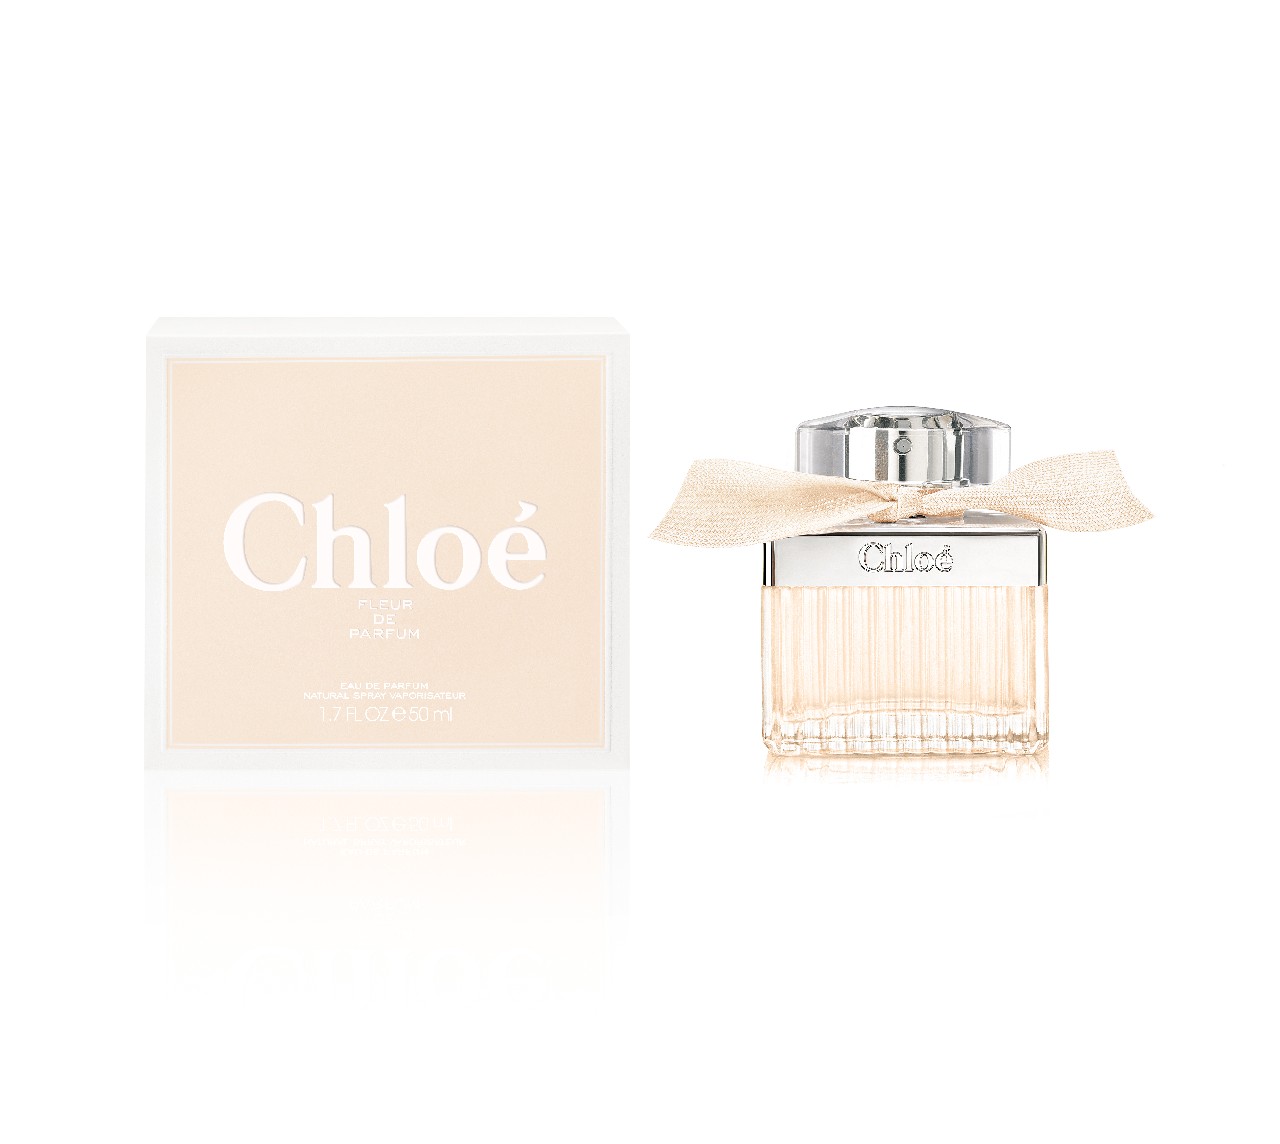 Chloé Fleur de Parfum: la nuova fragranza femminile, testimonial Dree Hemingway